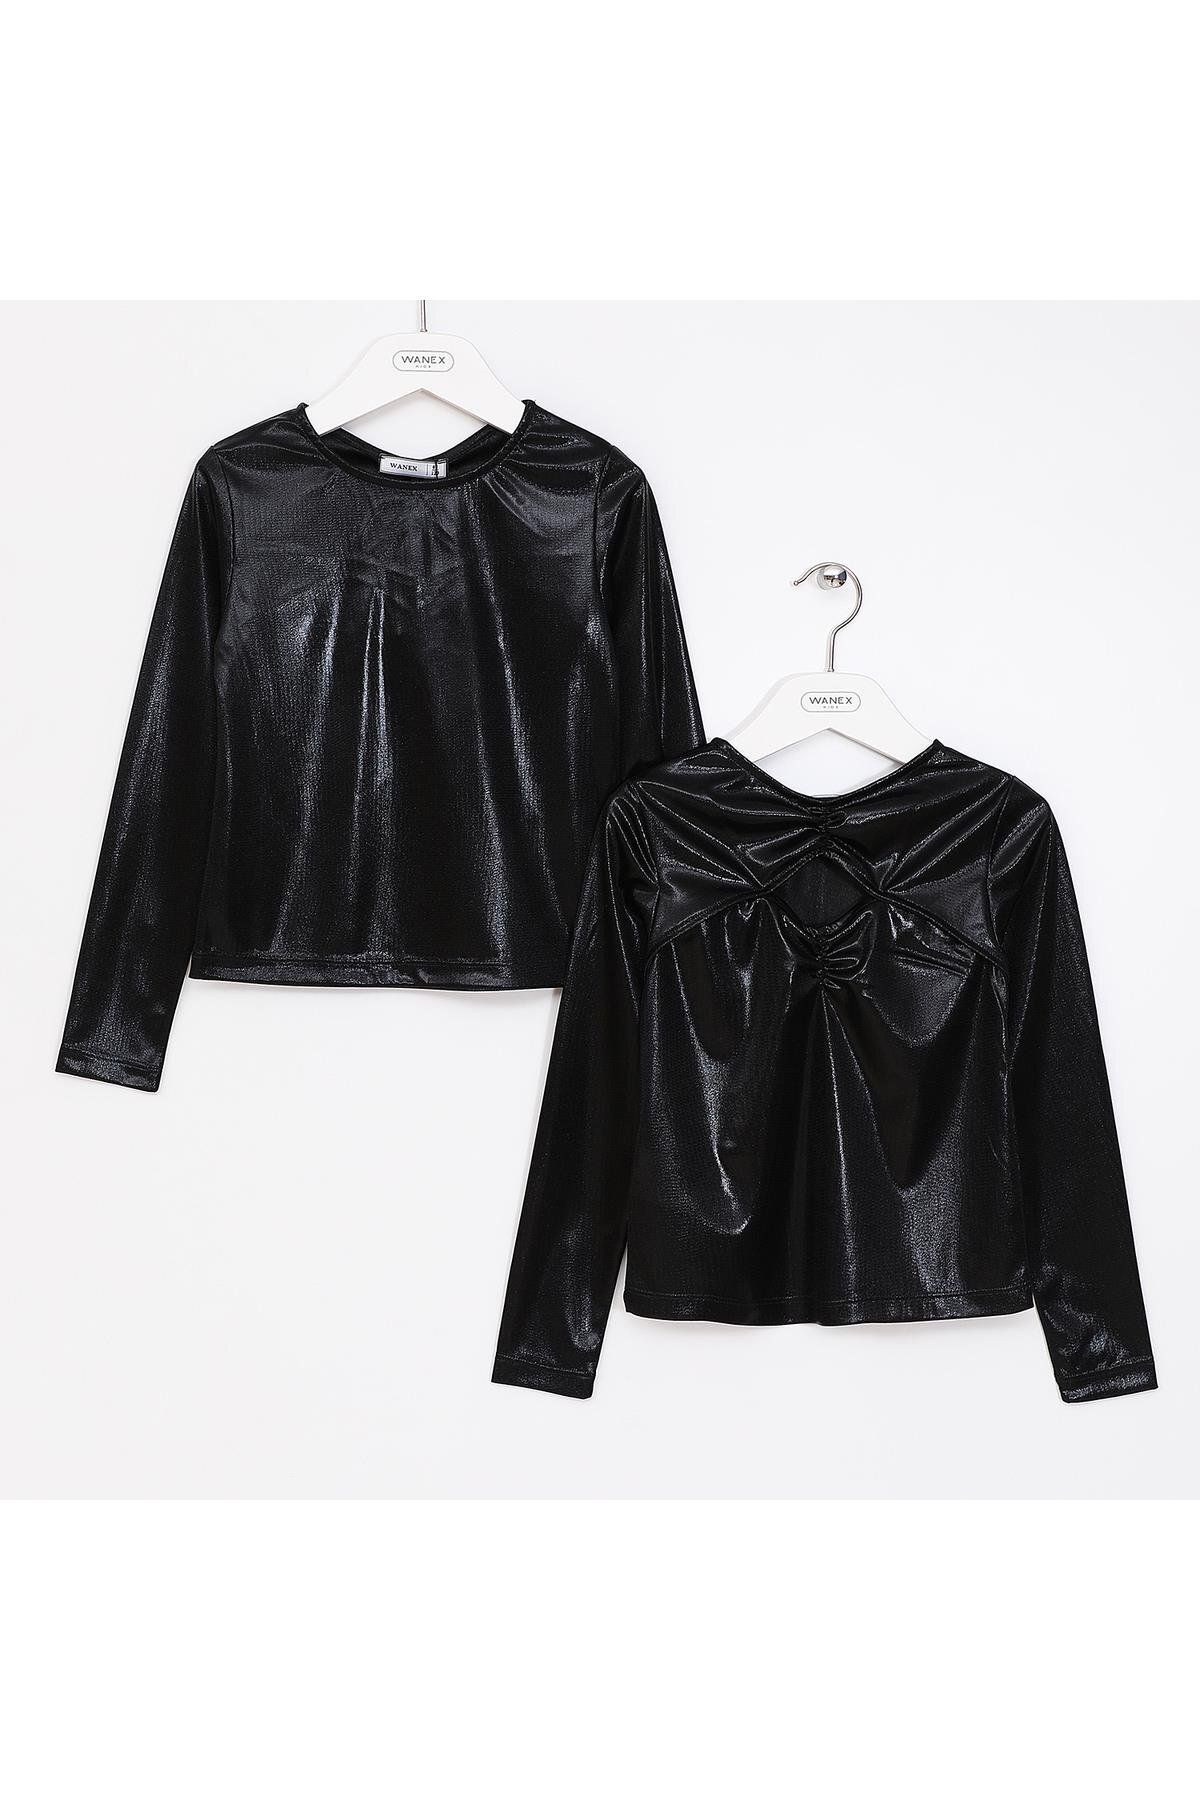 WANEX Kız Çocuk Uzun Kol Premium Bluz - 03011 - Siyah